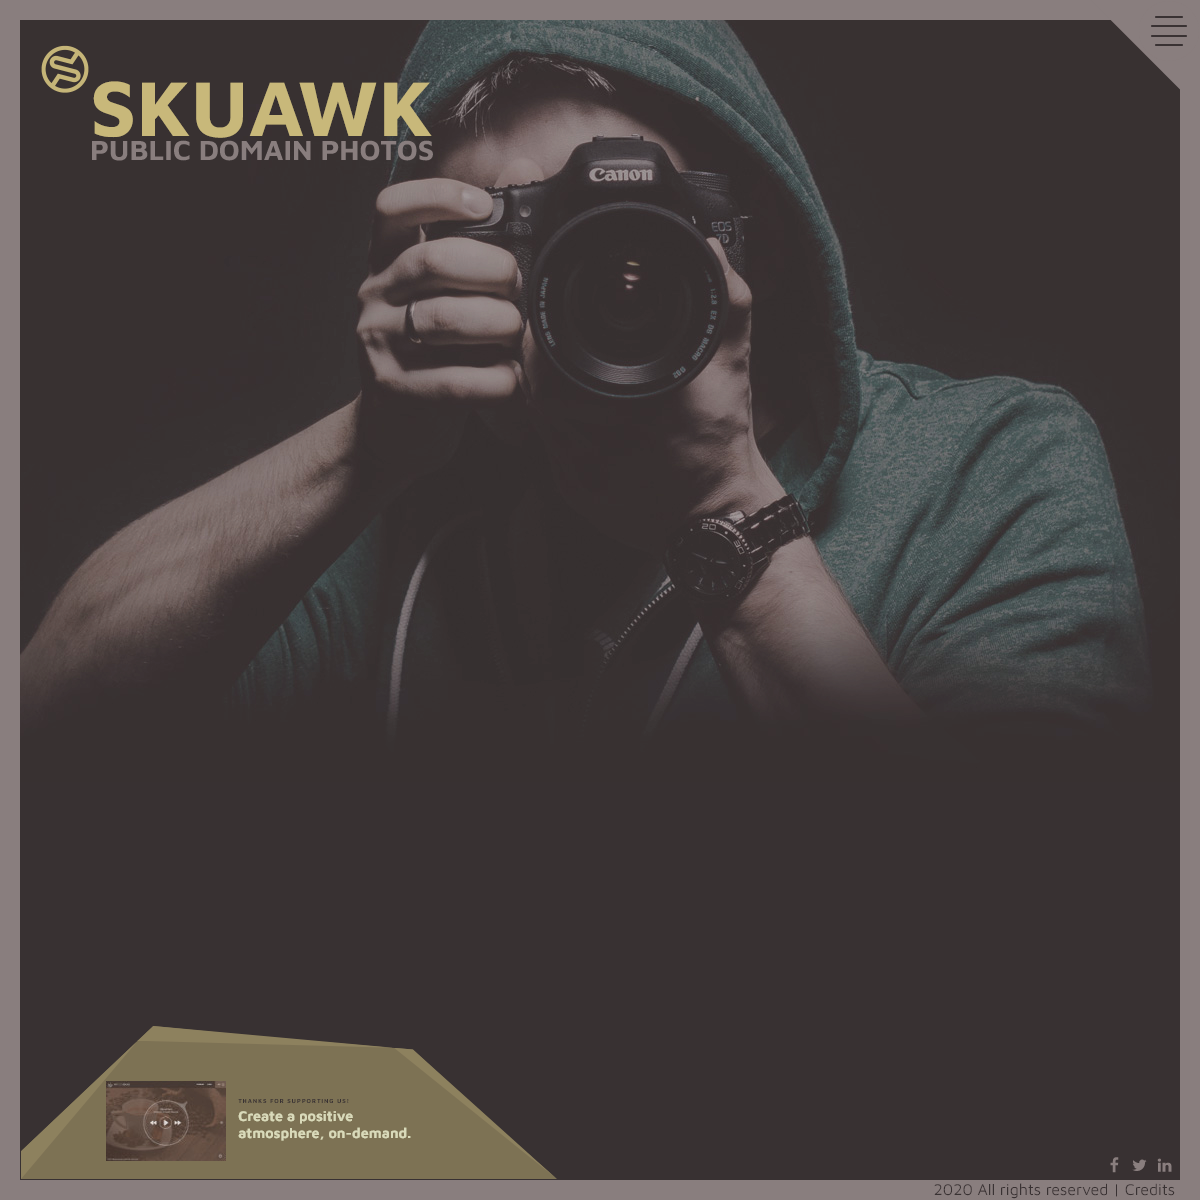 A complete backup of skuawk.com